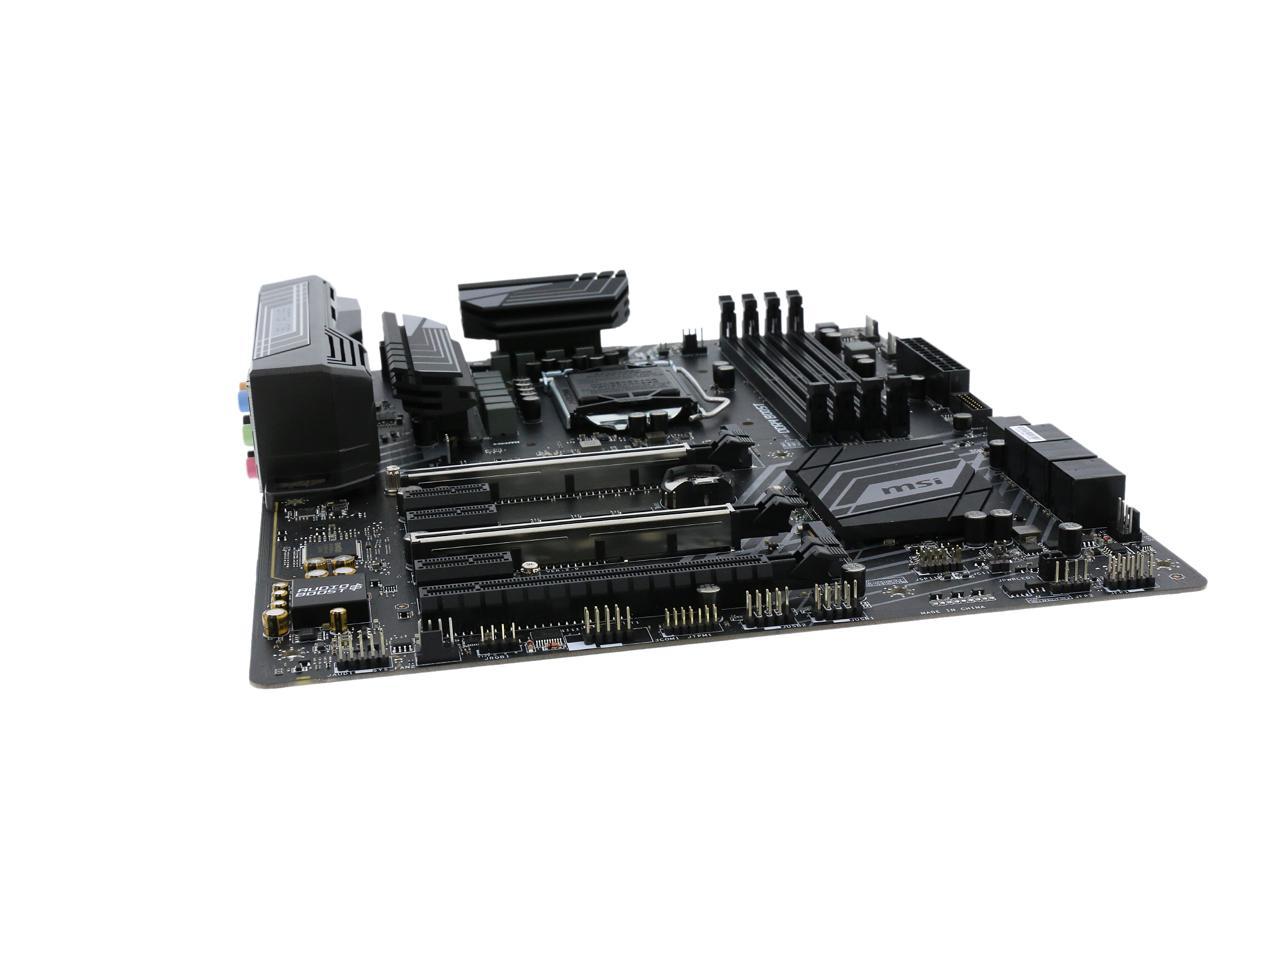 HDMI DDR4 LGA 1151 2x Turbo M.2 & 10x USB 3.1 2x Gen 2 & 8x Gen1 Z370 SLI PLUS